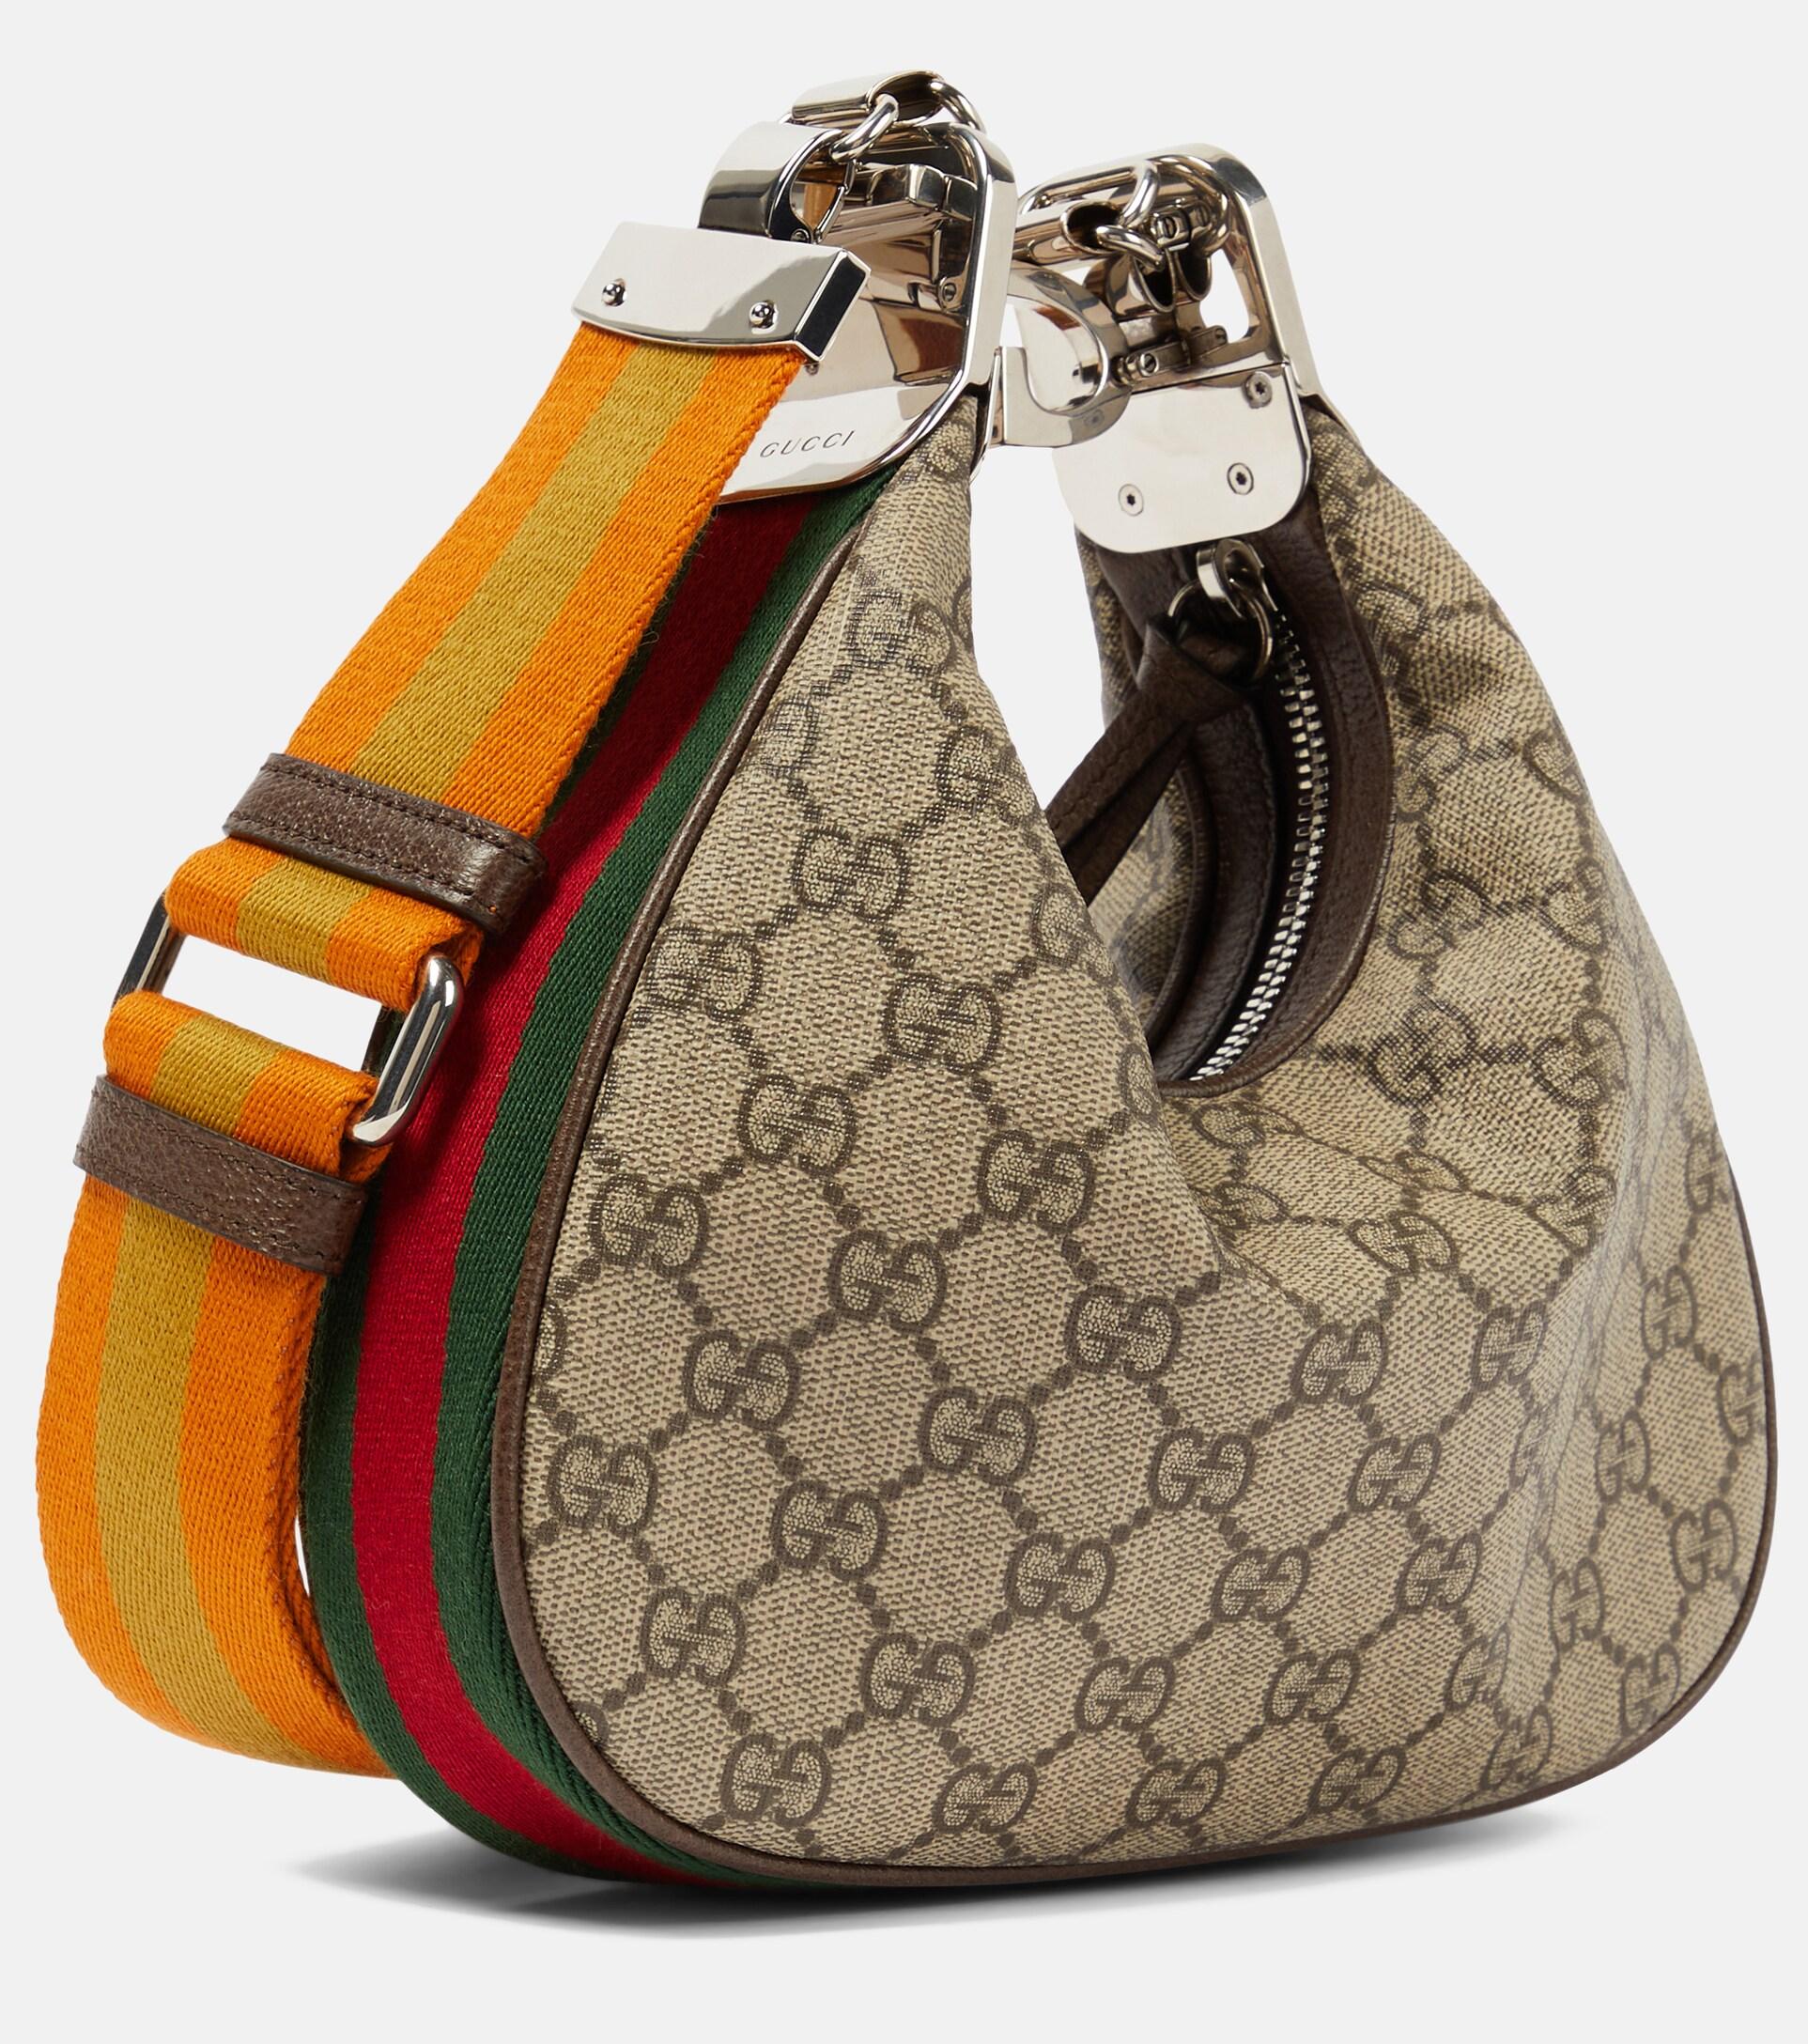 Gucci Attache Small Shoulder Bag in Green